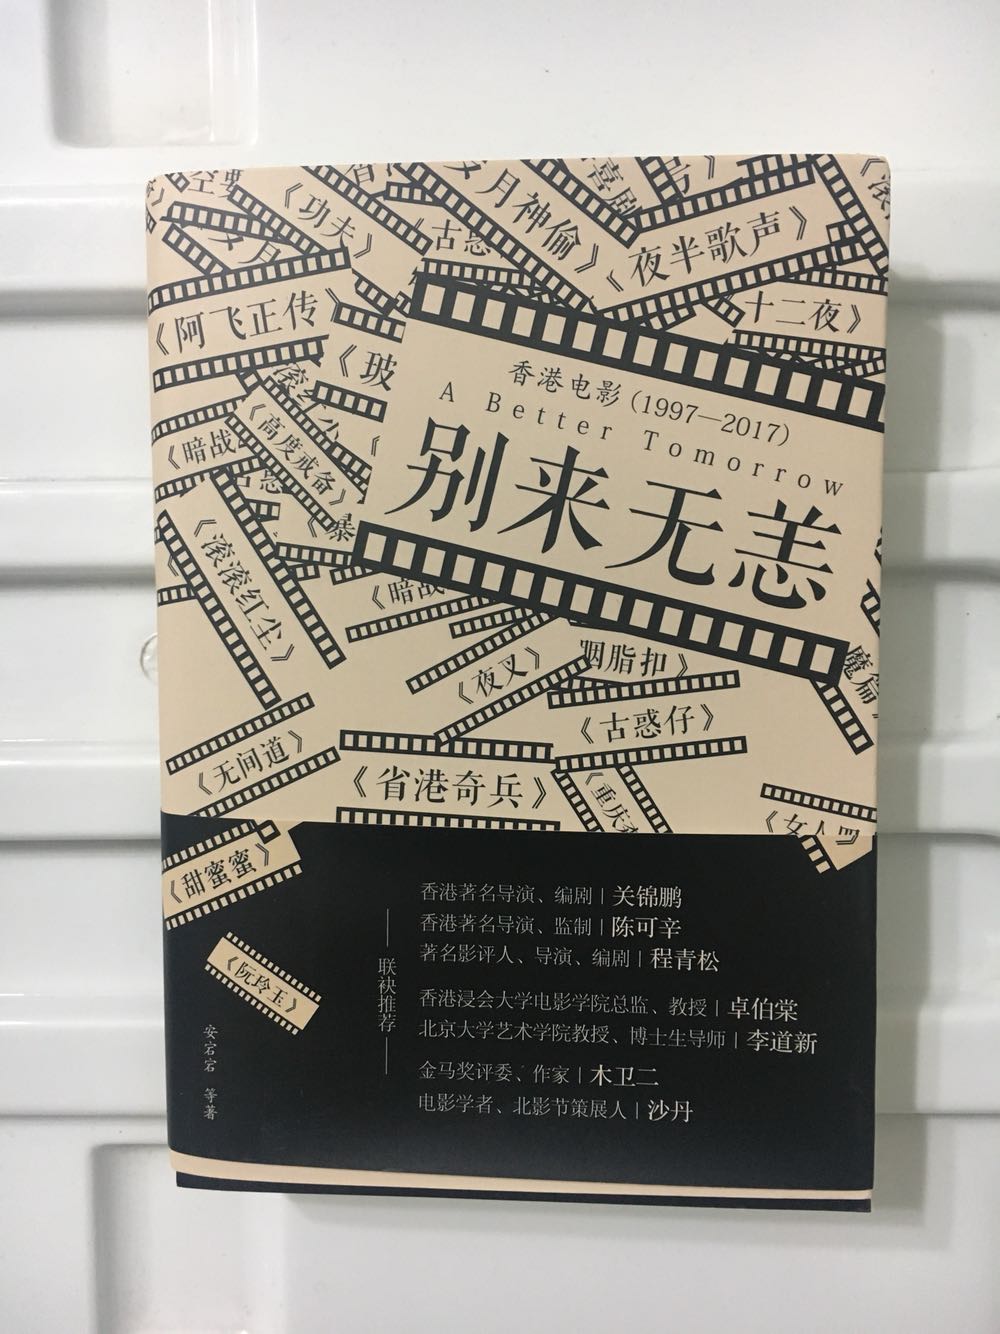 百丽宫影城做香港电影周，赠送的小册子推荐了这本书，我对香港电影很热爱，对于书写香港电影的书籍也一并收纳。